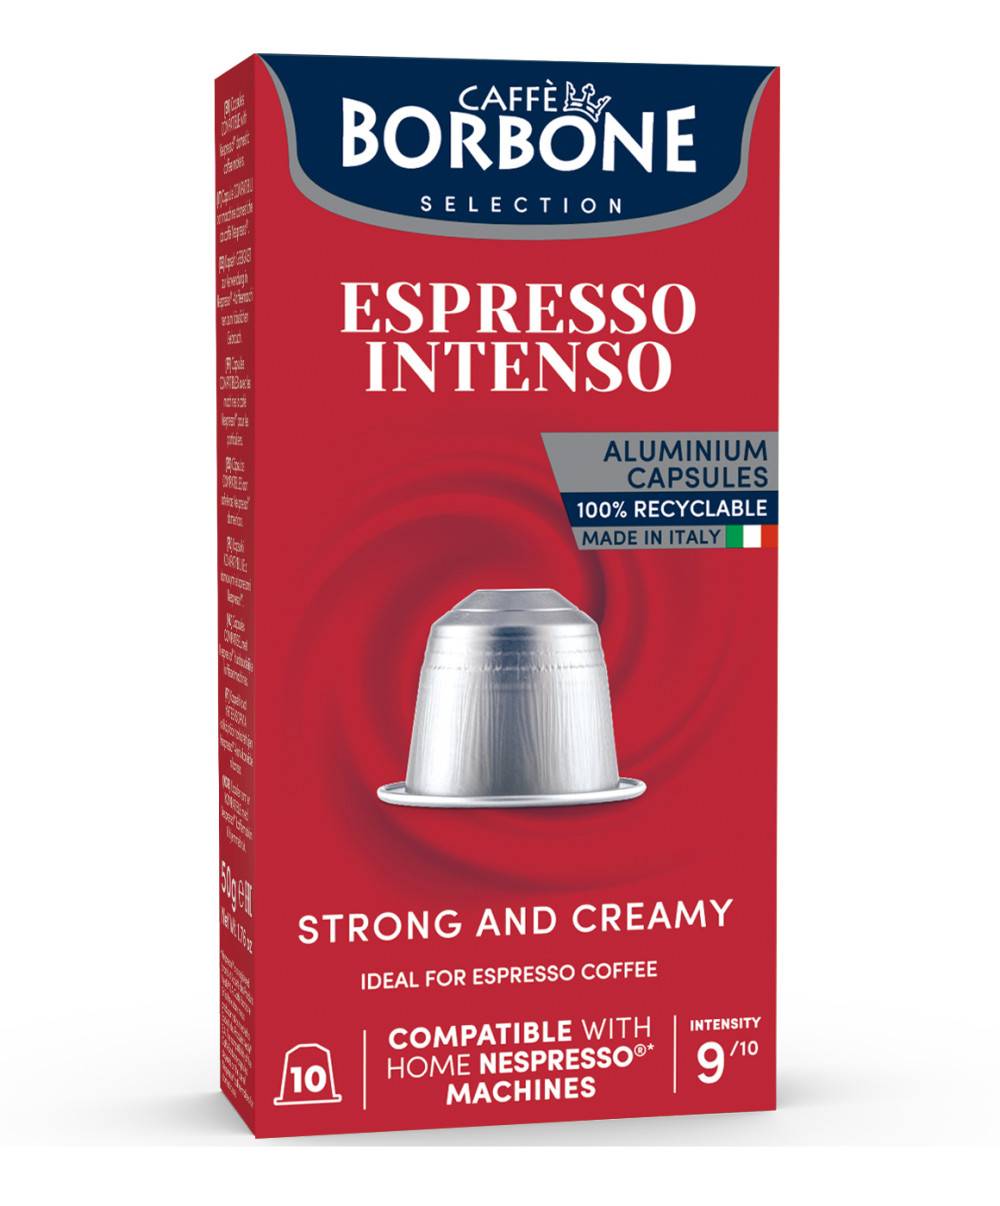 Borbone Caffé Nespresso x10 caps. - Espresso Intenso 50g  